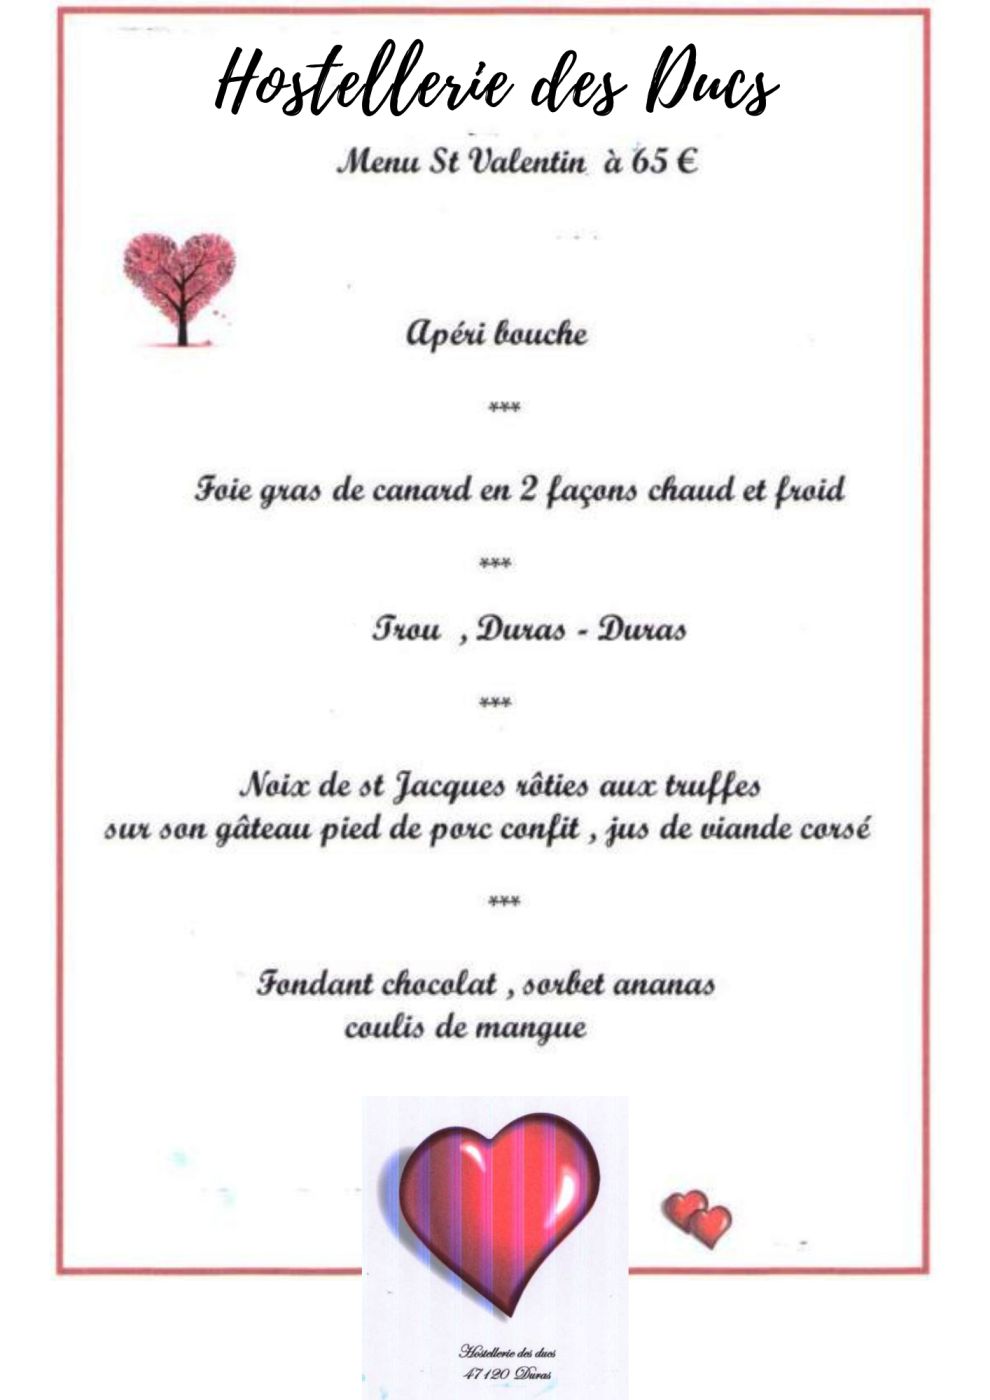 Hostellerie Ducs menu St Valentin